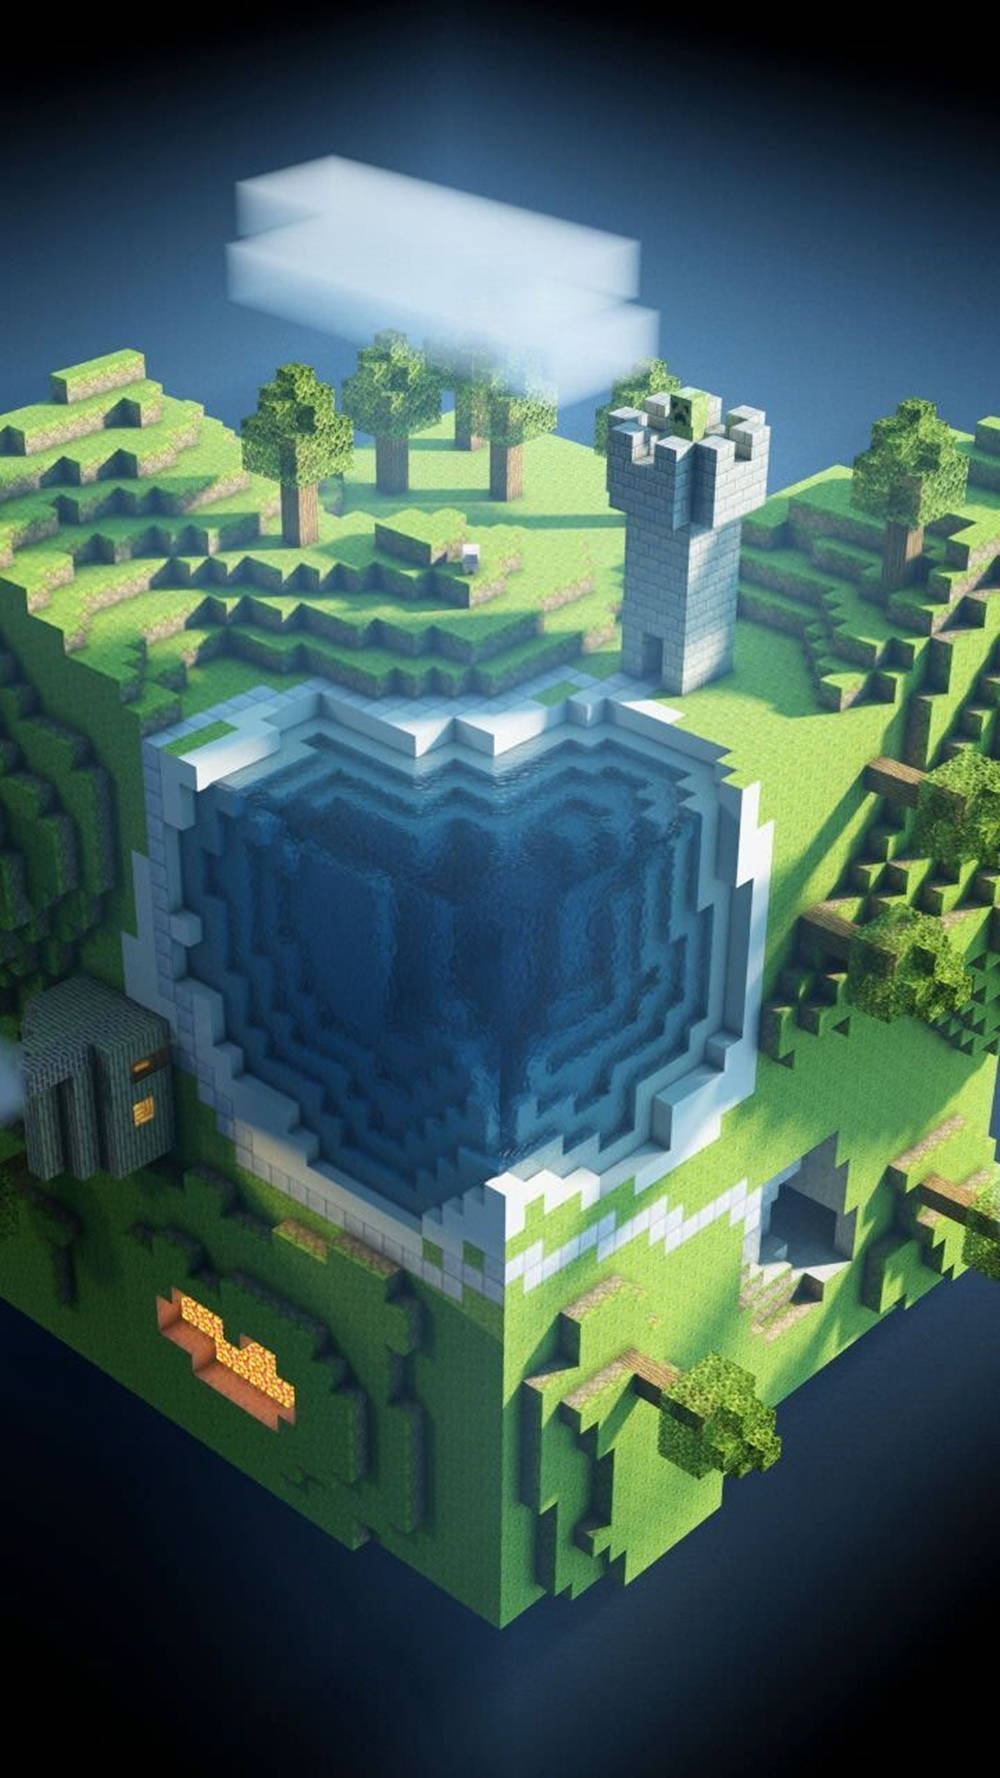 Vistasuperior Del Parque Verde De Minecraft En El Teléfono. Fondo de pantalla